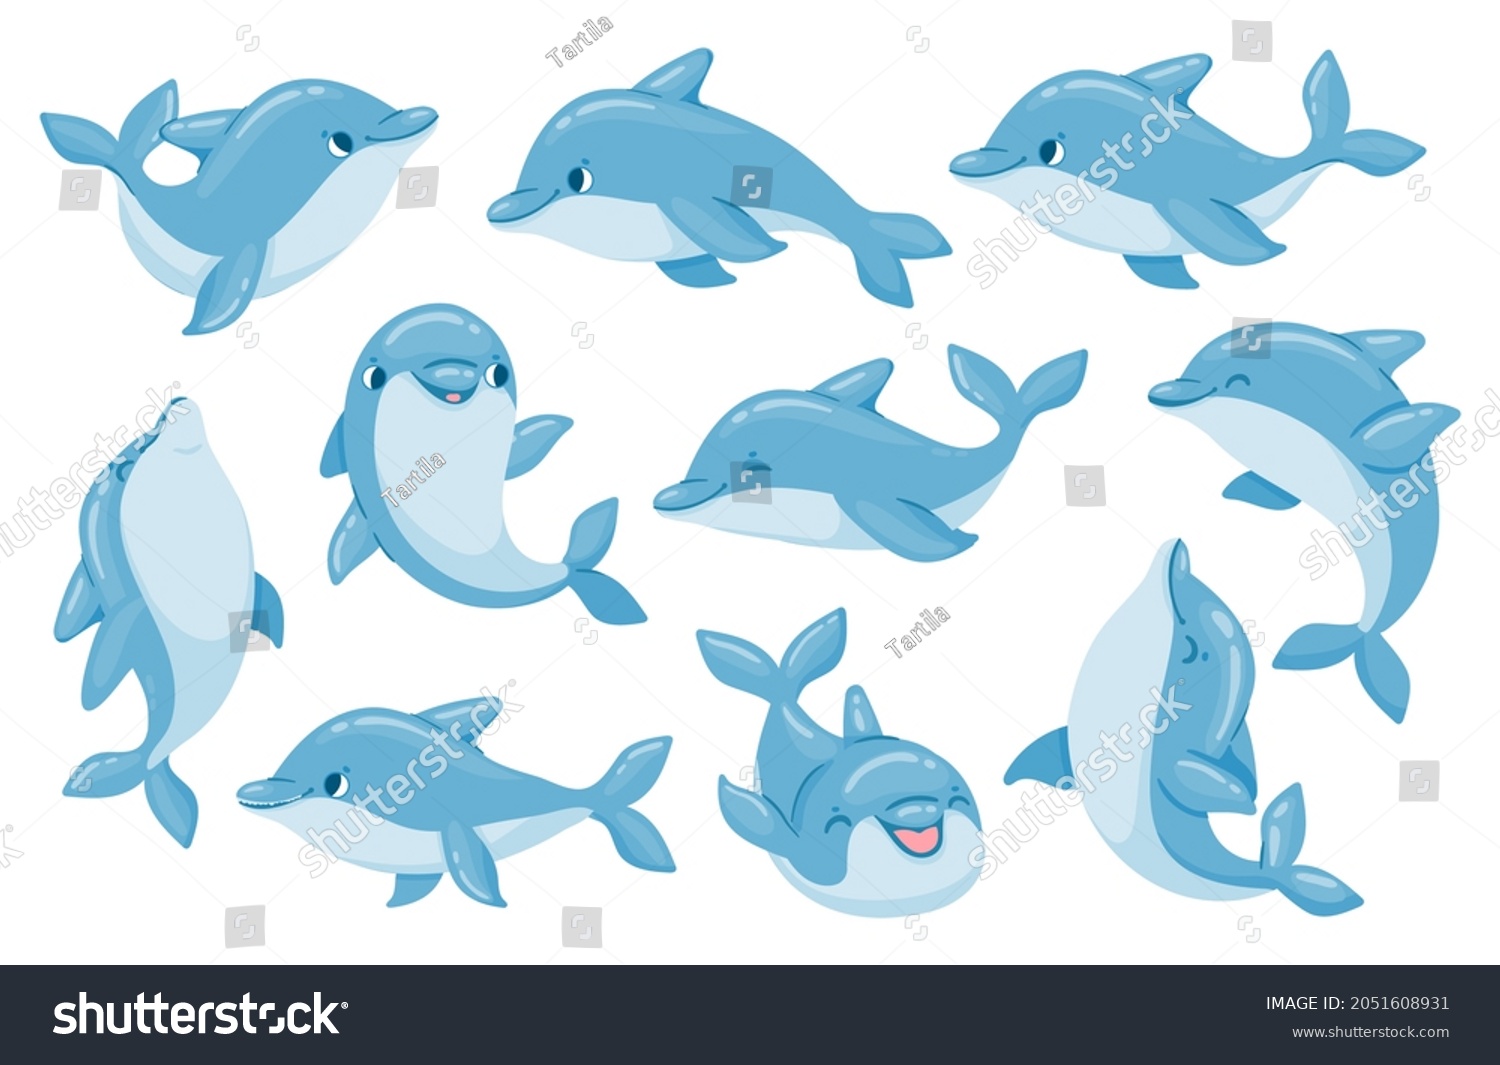 Дельфин персонаж